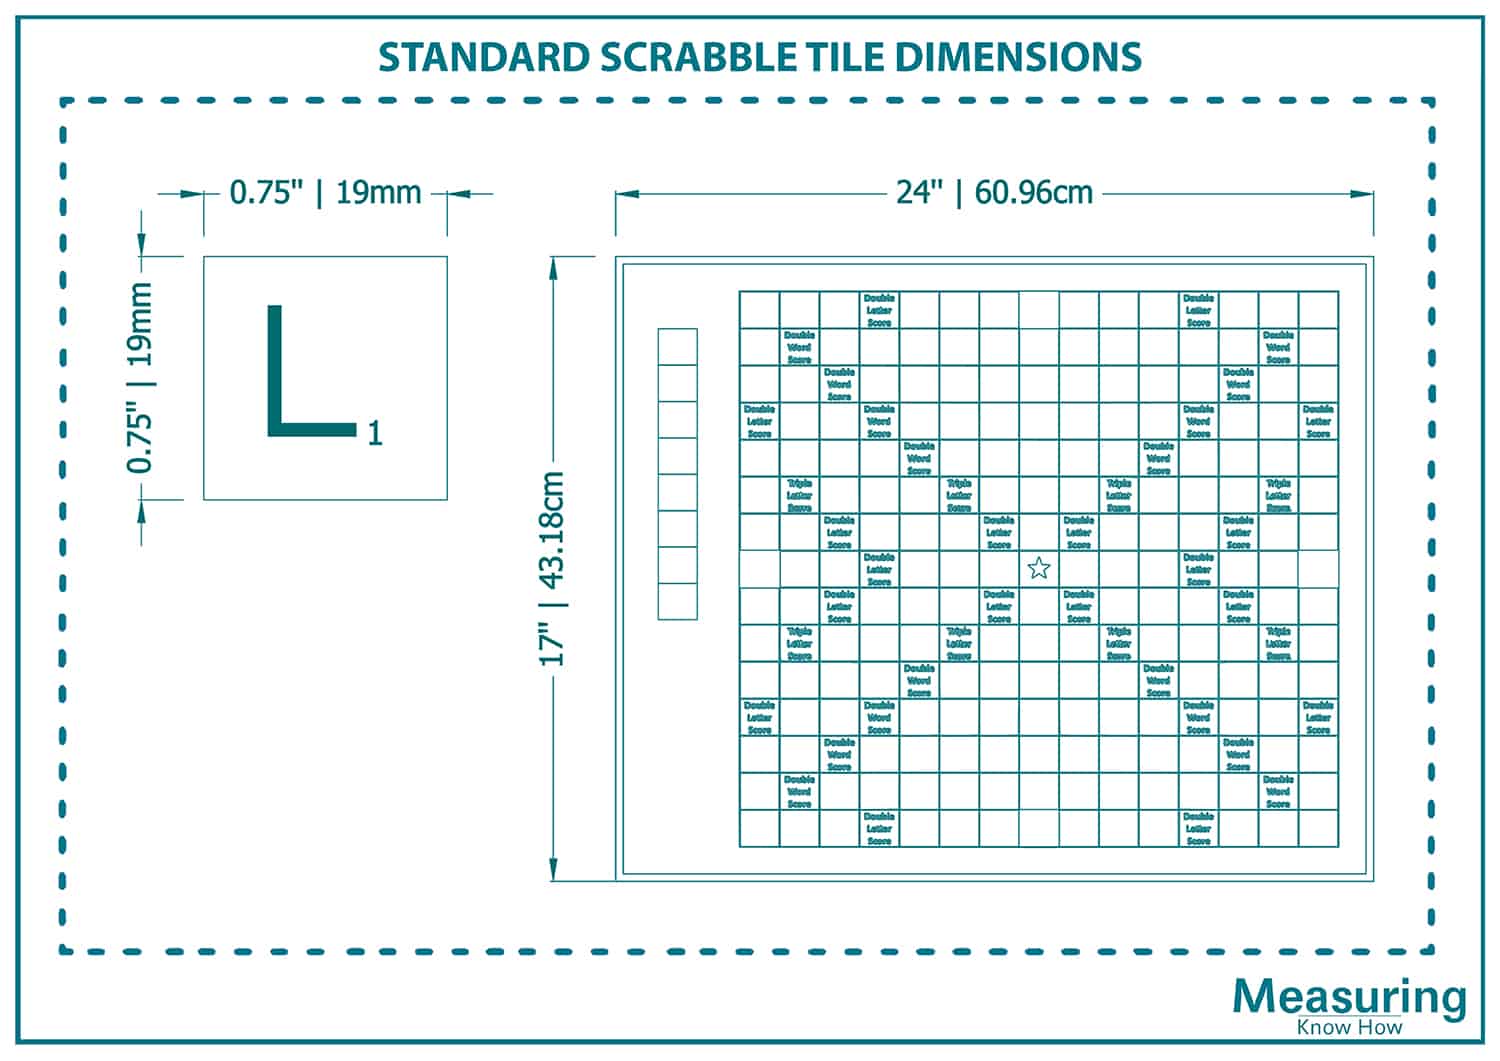 Standard scrabble tile dimensions